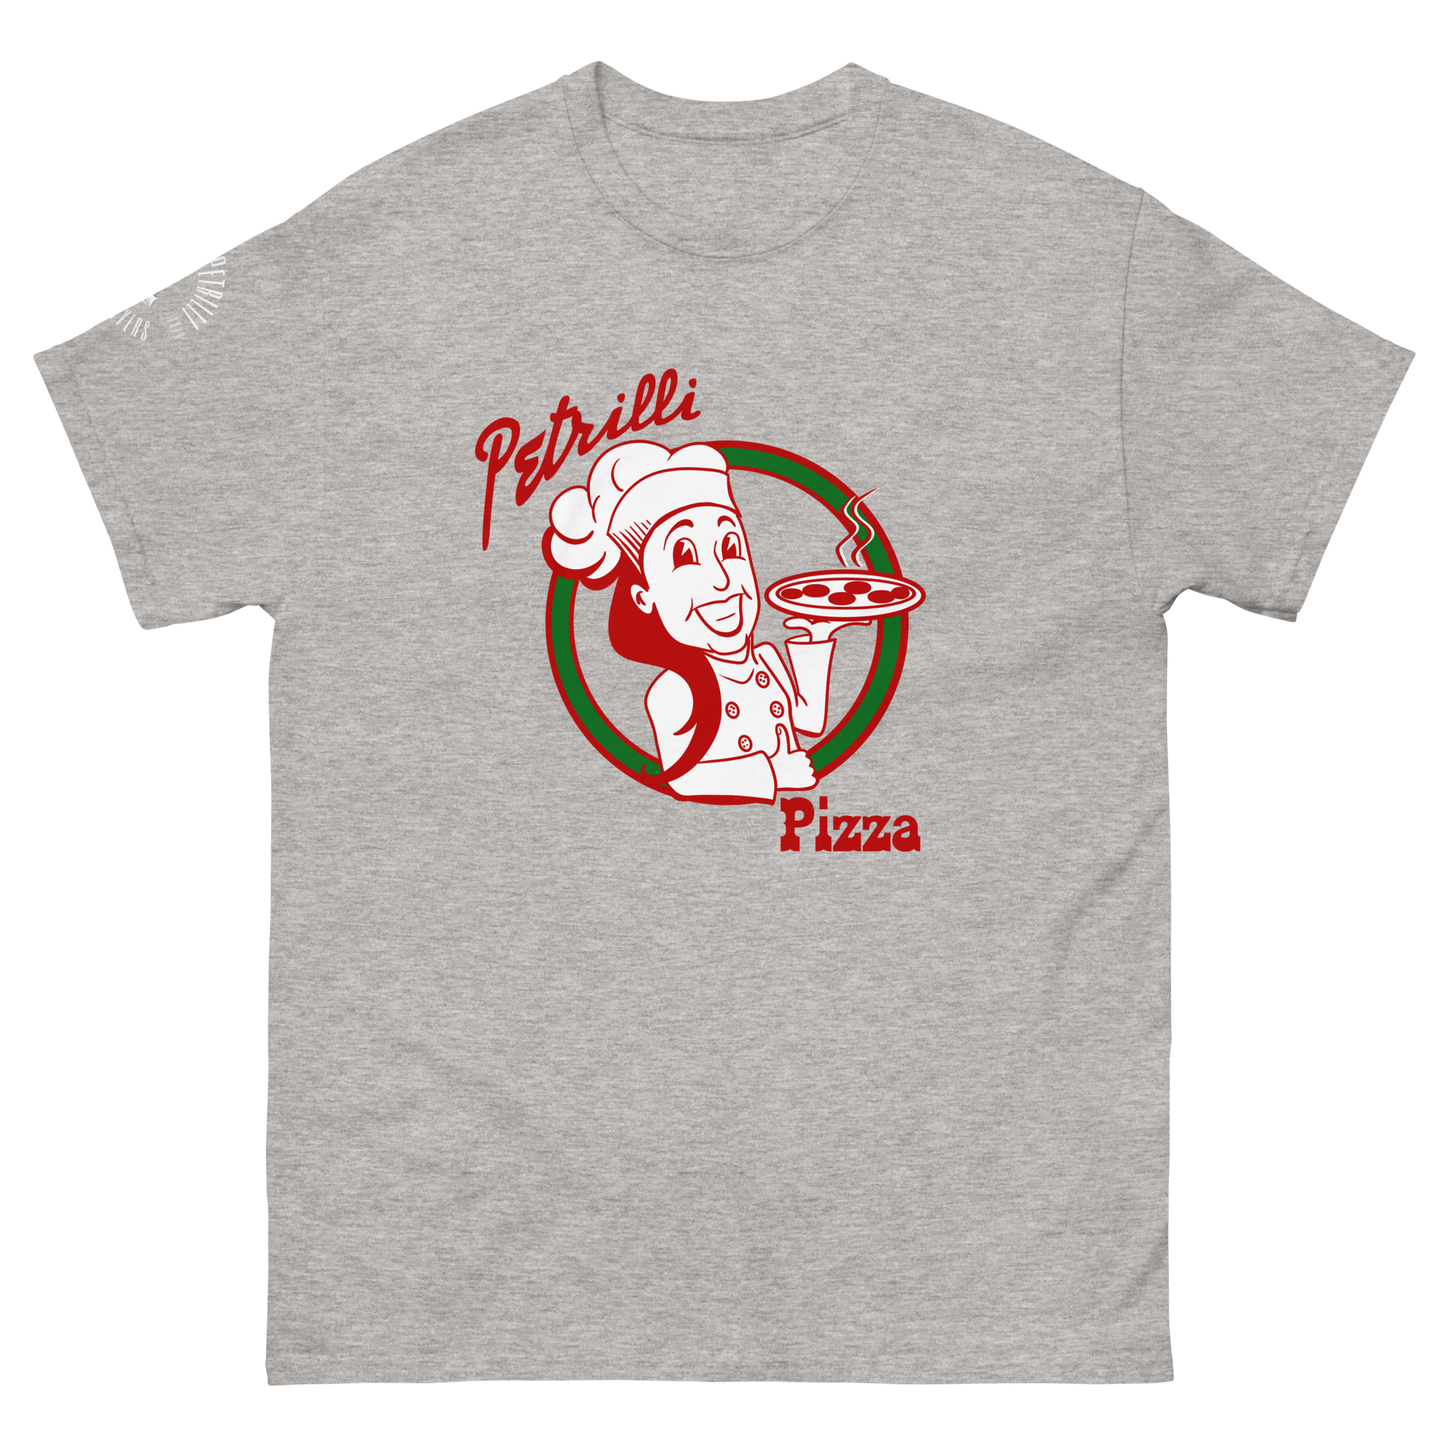 Mens - Petrilli Pizza Shirt